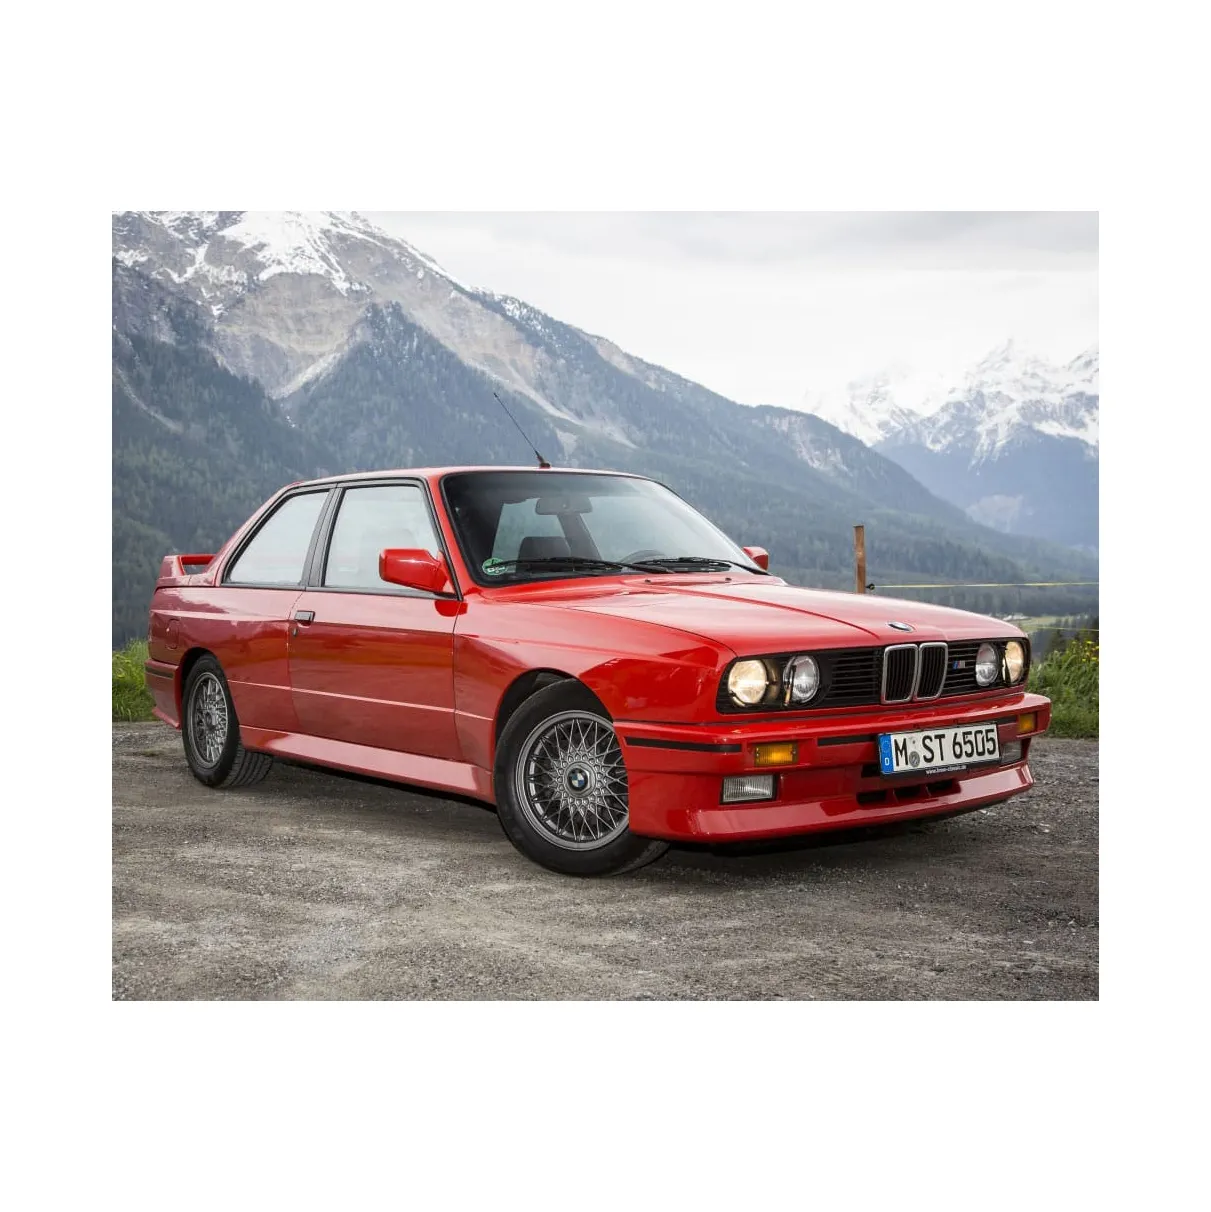 BMW X5 M AWD 4dr Sport-Aktivitätsfahrzeug Qualität bester Preis Großhandel gebrauchte Autos zum Verkauf